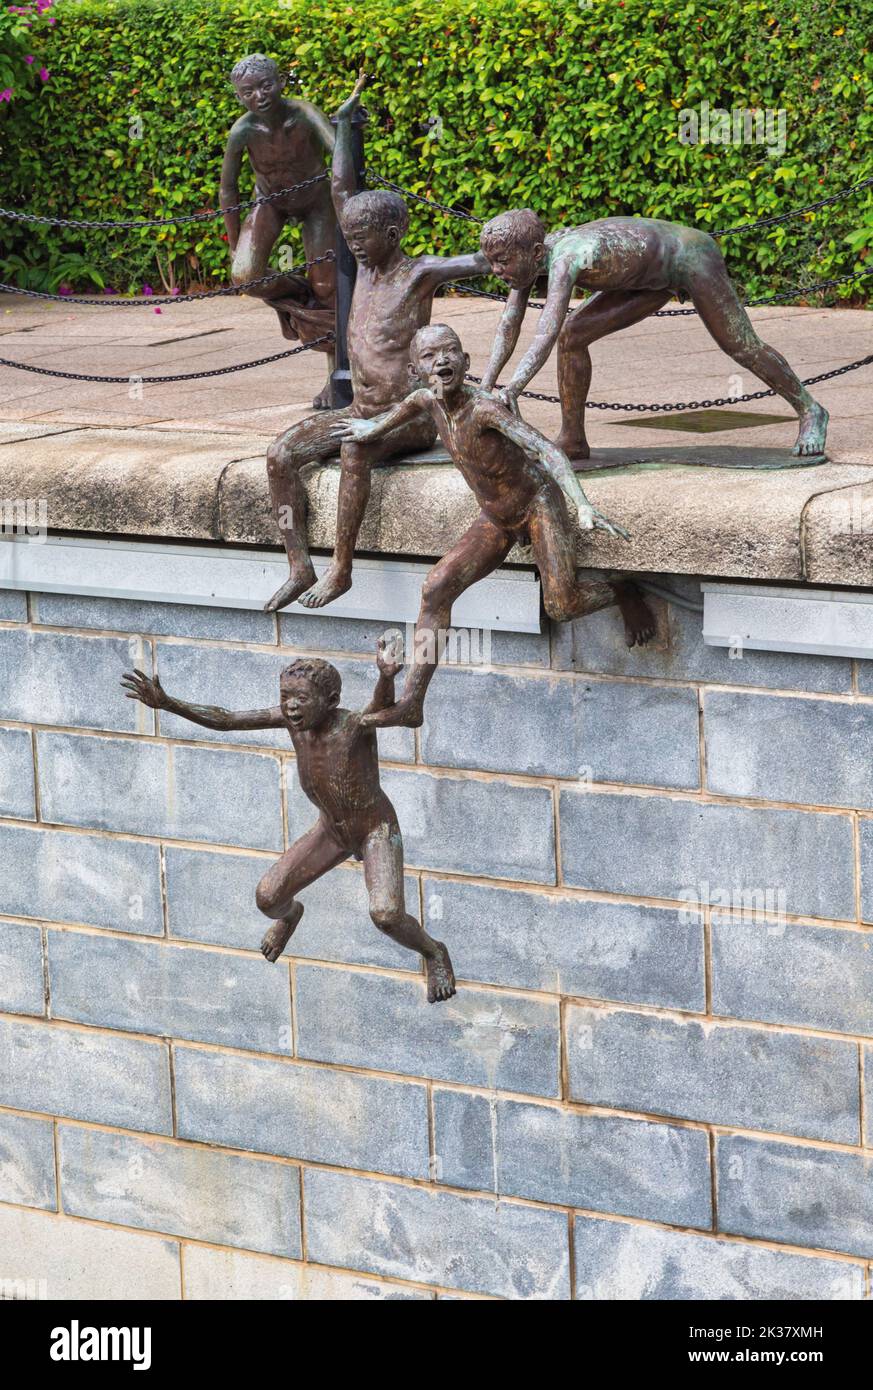 Die erste Generation, eine Bronzeskulptur des singapurischen Künstlers Chong Fah Cheong, geboren 1946. Republik Singapur. Er hat mehrere figurative geschaffen Stockfoto